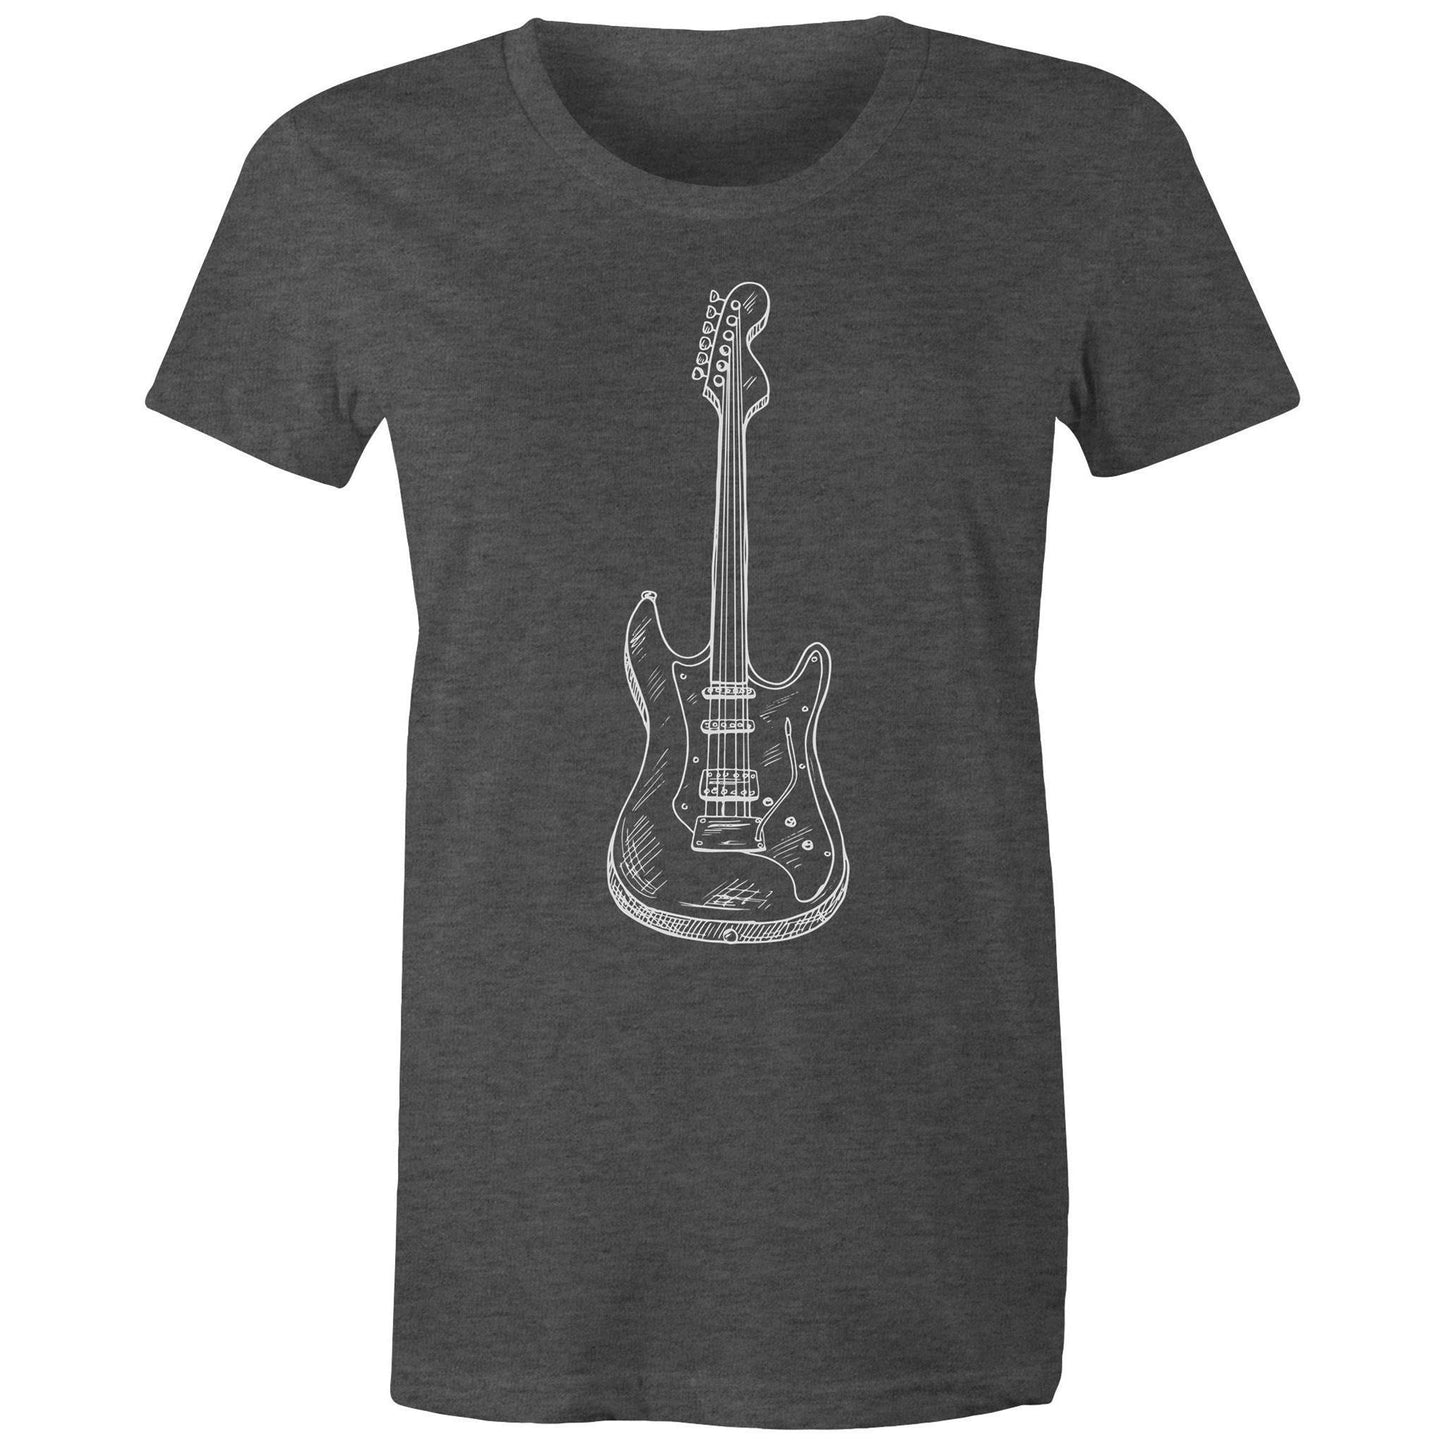 Guitar - Women's T-shirt Asphalt Marle Womens T-shirt Music Womens